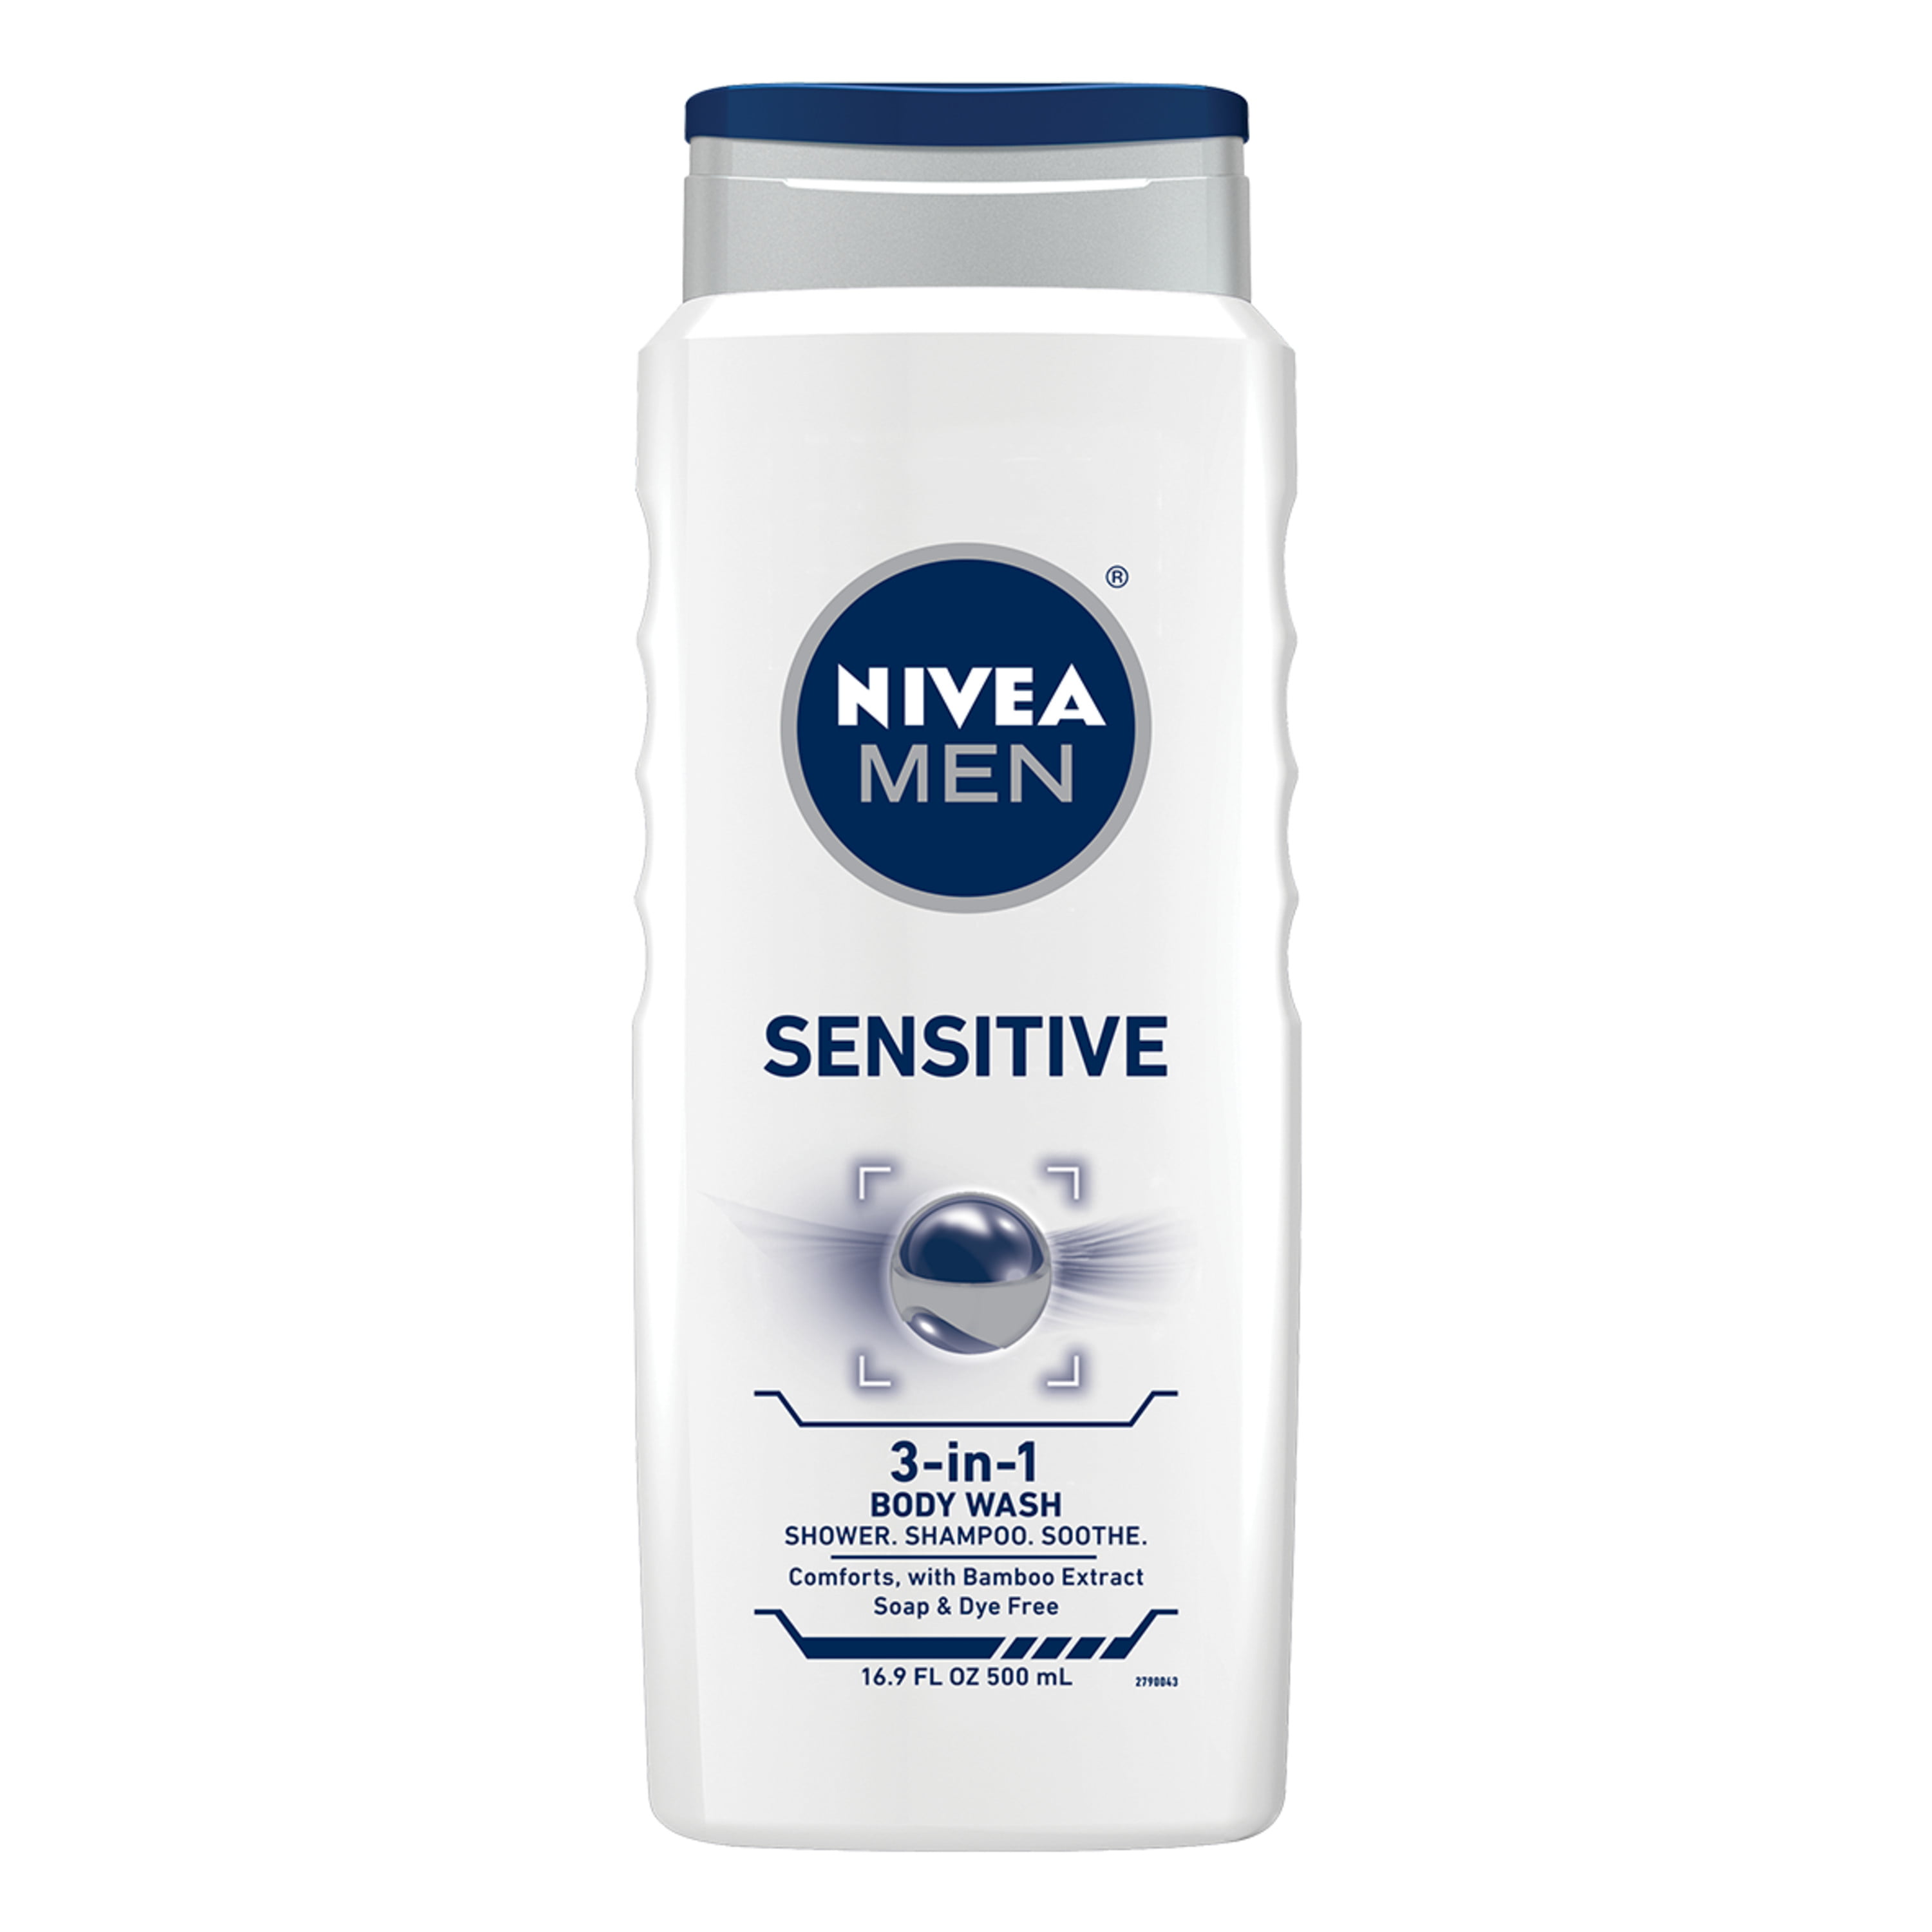 NIVEA Men Sensitive 3-in-1 Body Wash 16.9 fl. oz. - Walmart.com